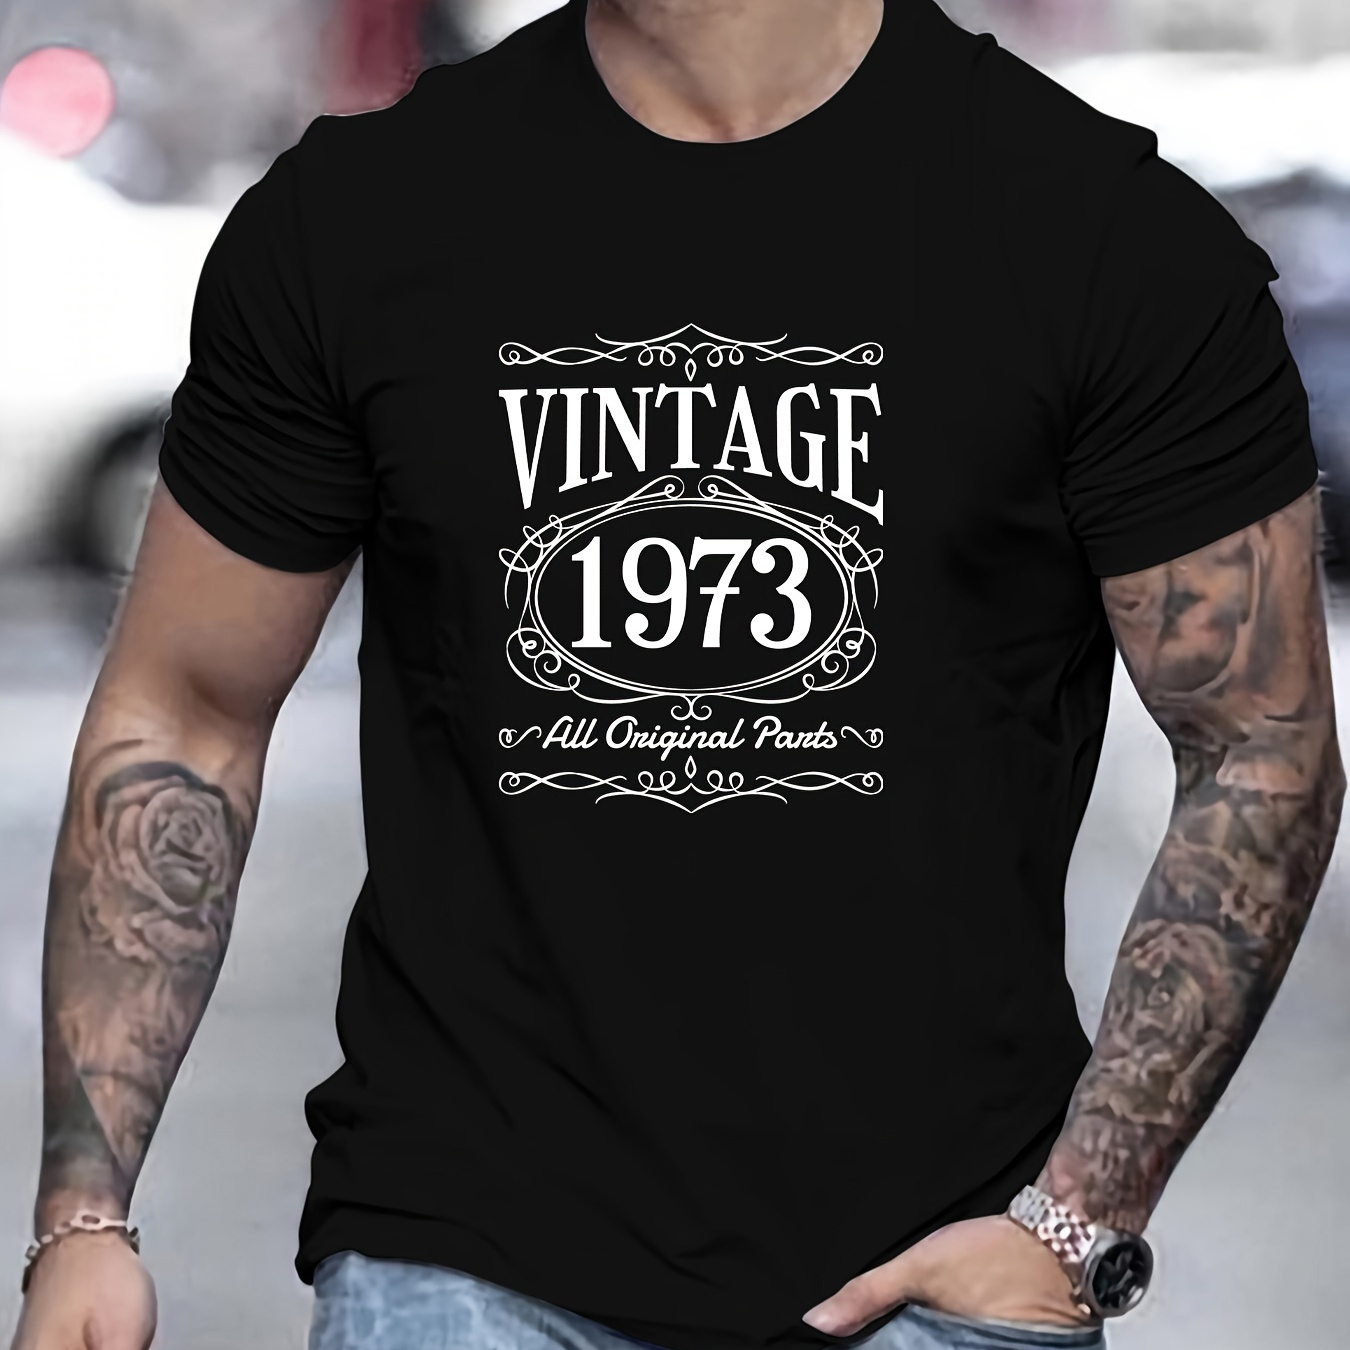 

T-shirt imprimé vintage de 1973, pour hommes, manches courtes décontractées pour l'été